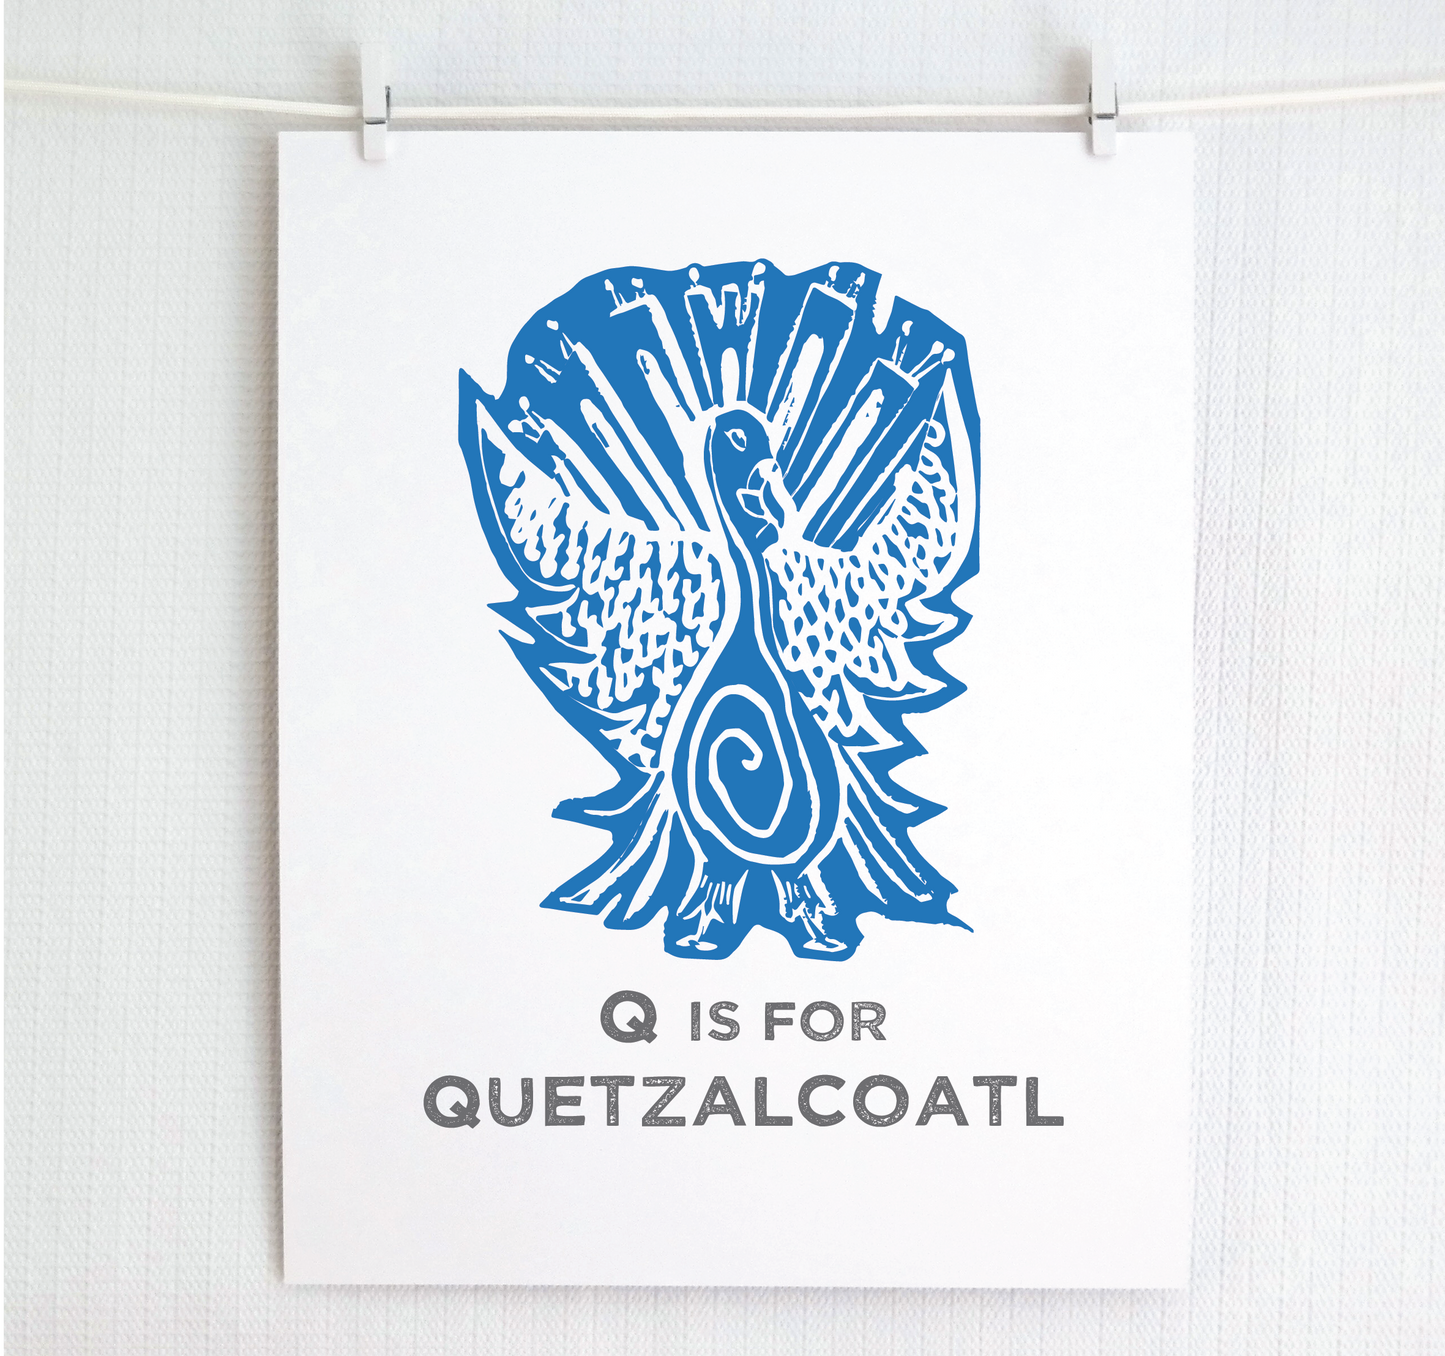 Q is for Quetzalcoatl